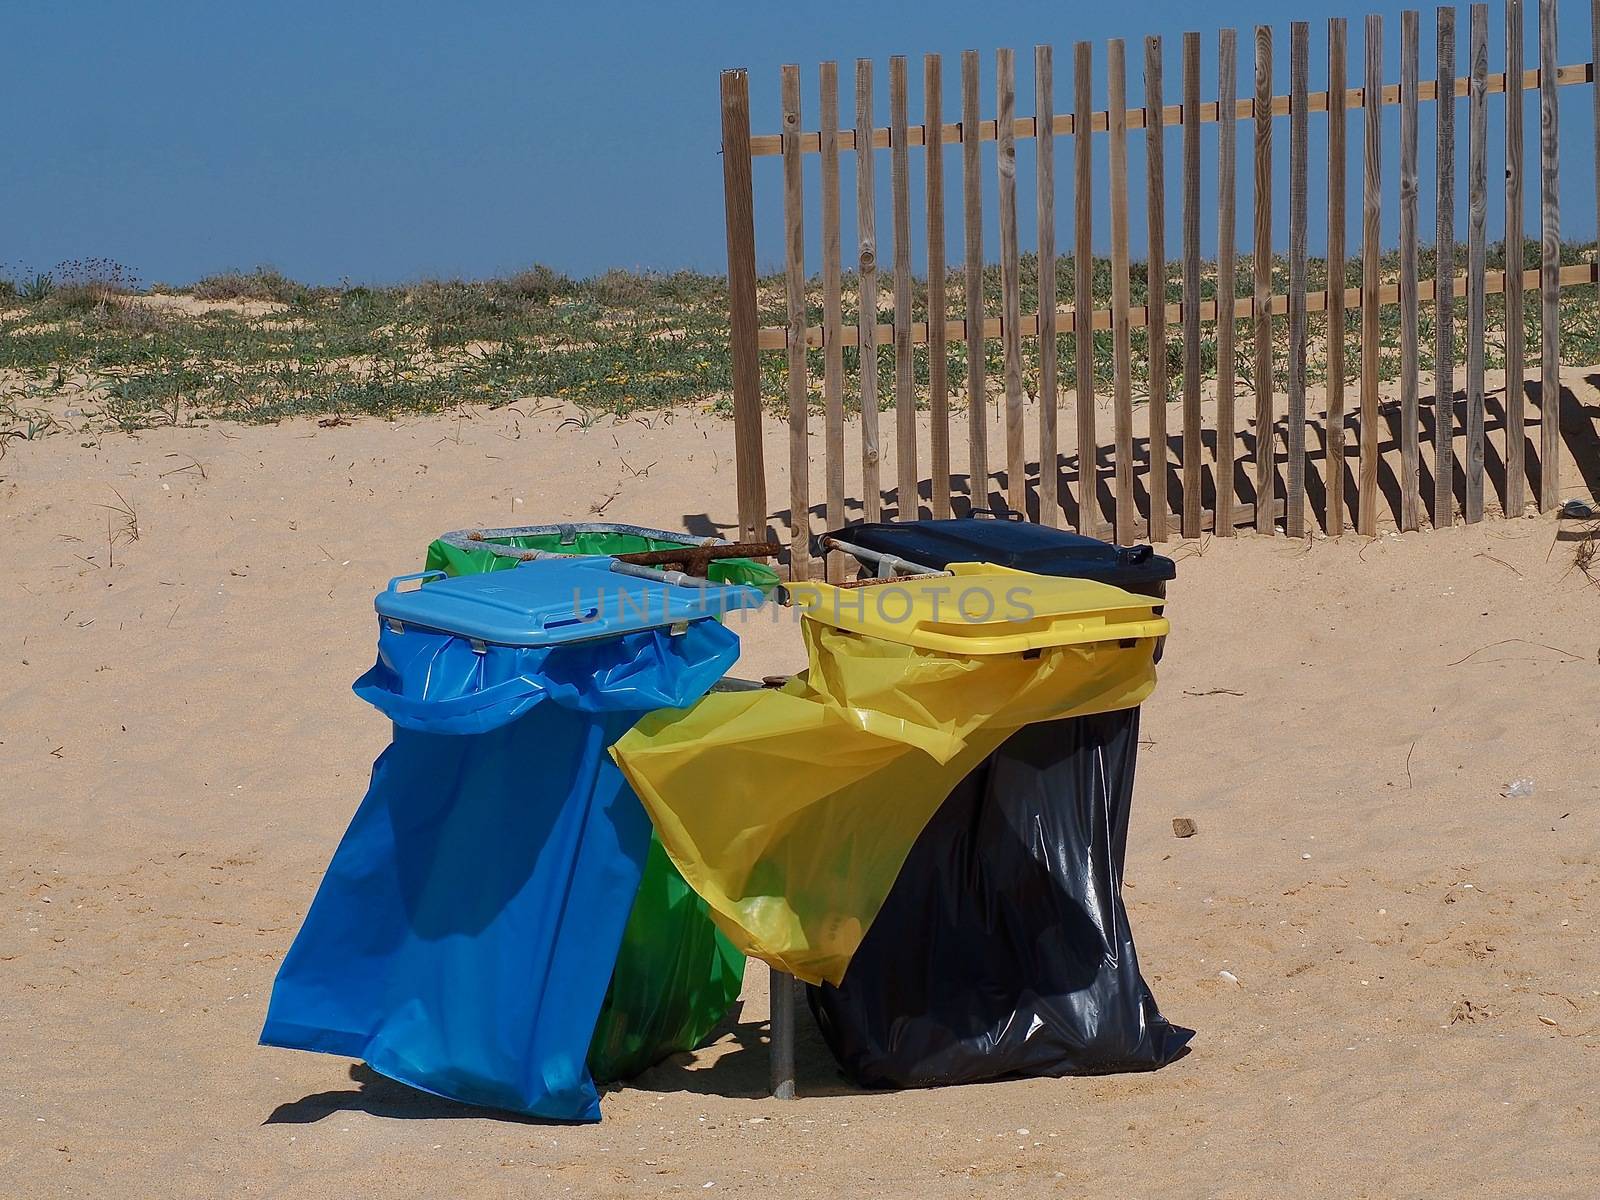 Waste separation in Portugal at a beach by Stimmungsbilder